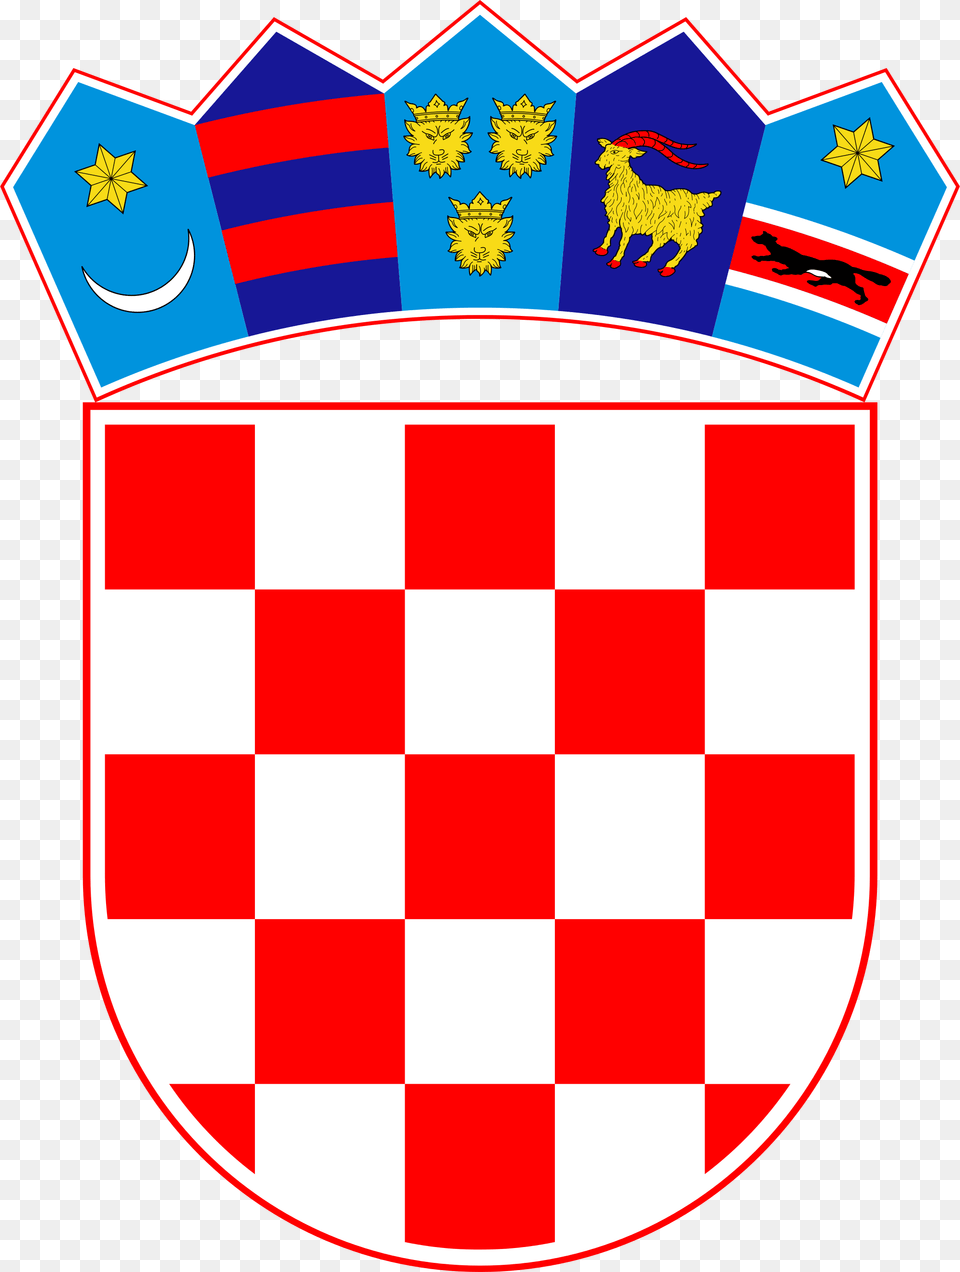 Escudo Bandera De Croacia, Armor, Shield Free Png Download